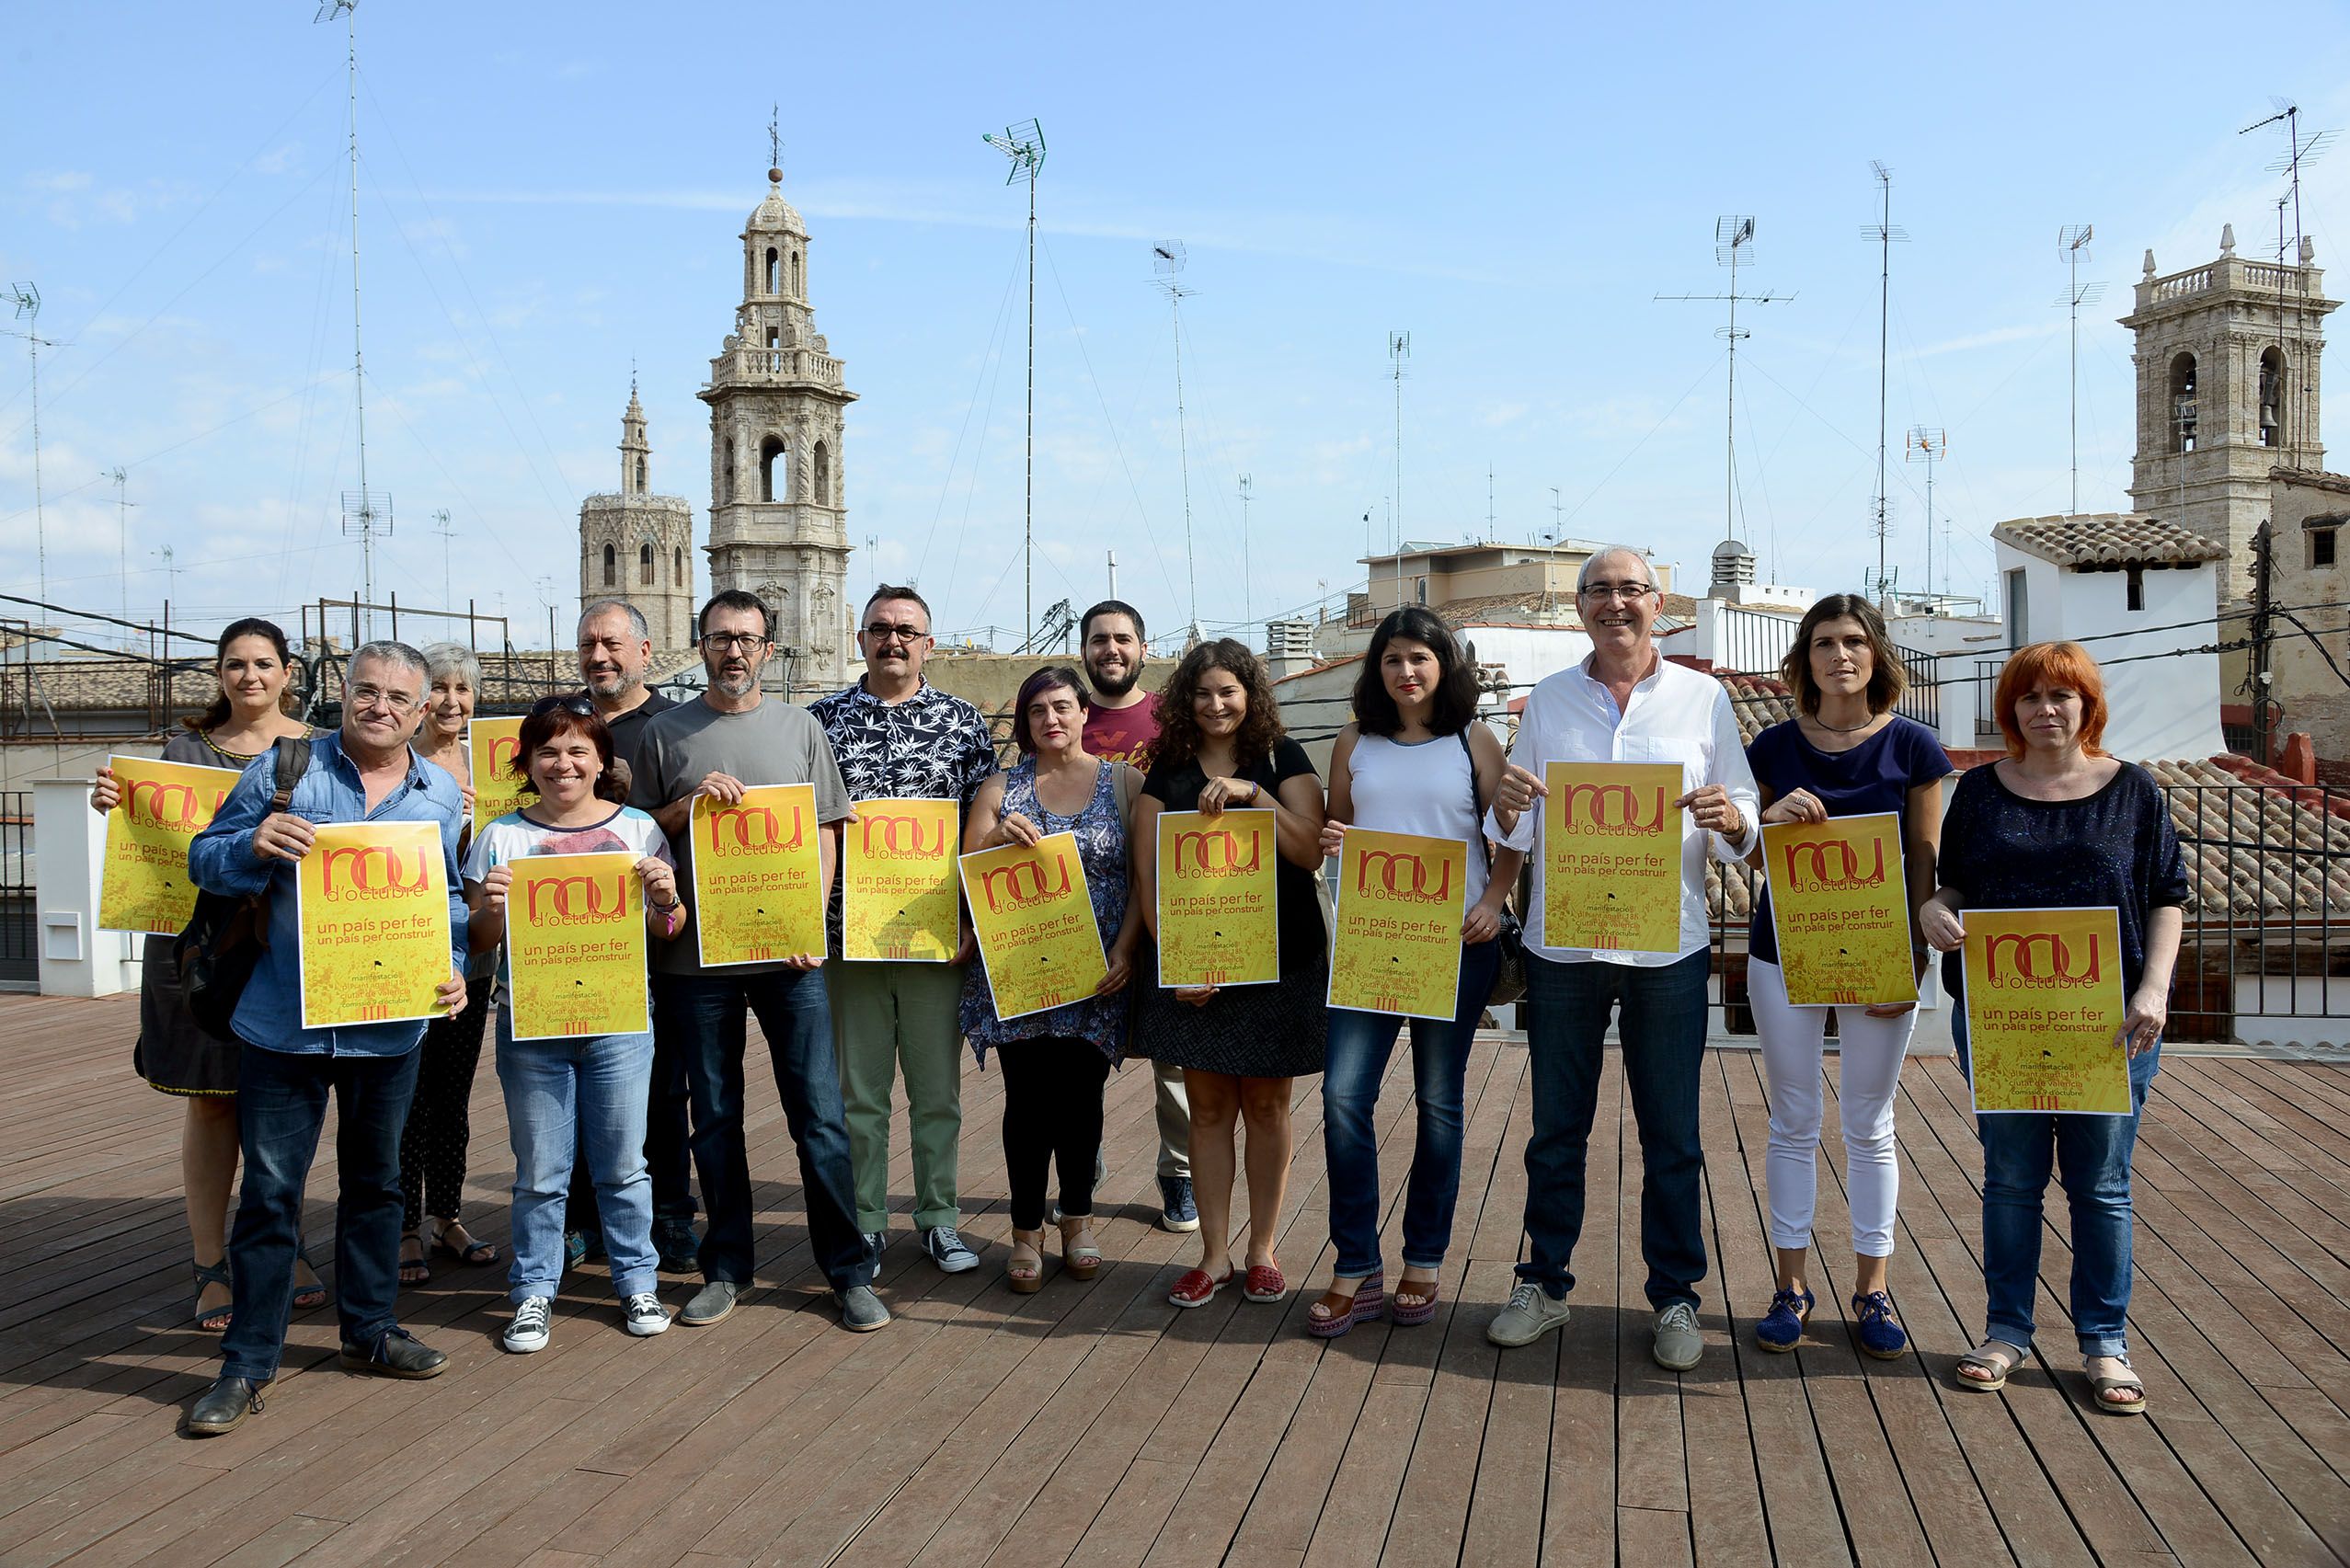 La manifestació del 9 d’Octubre reclama un finançament just per als valencians